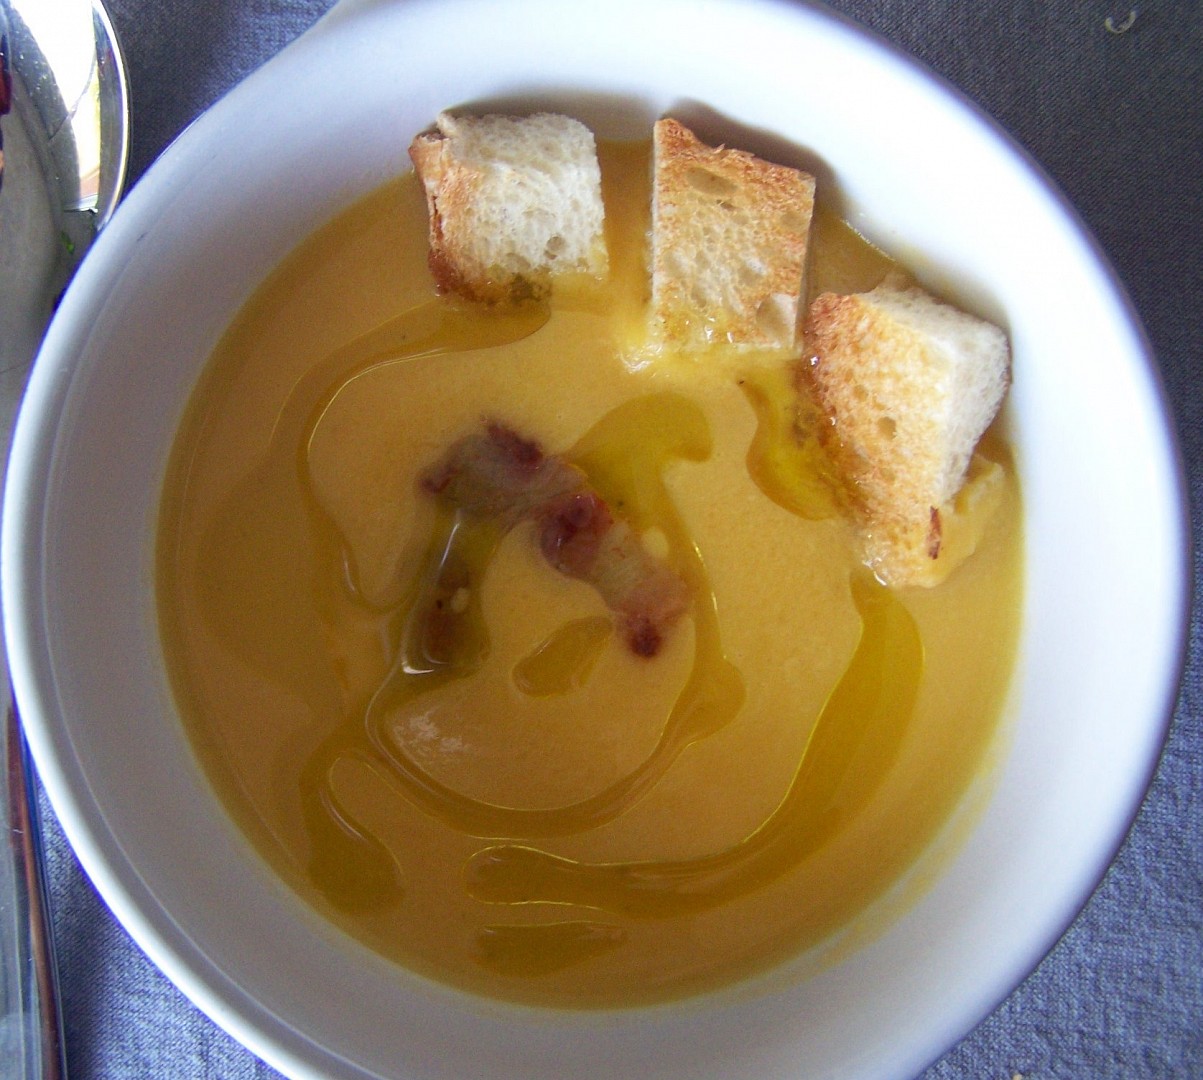 La soupe de potiron - dýňová polévka